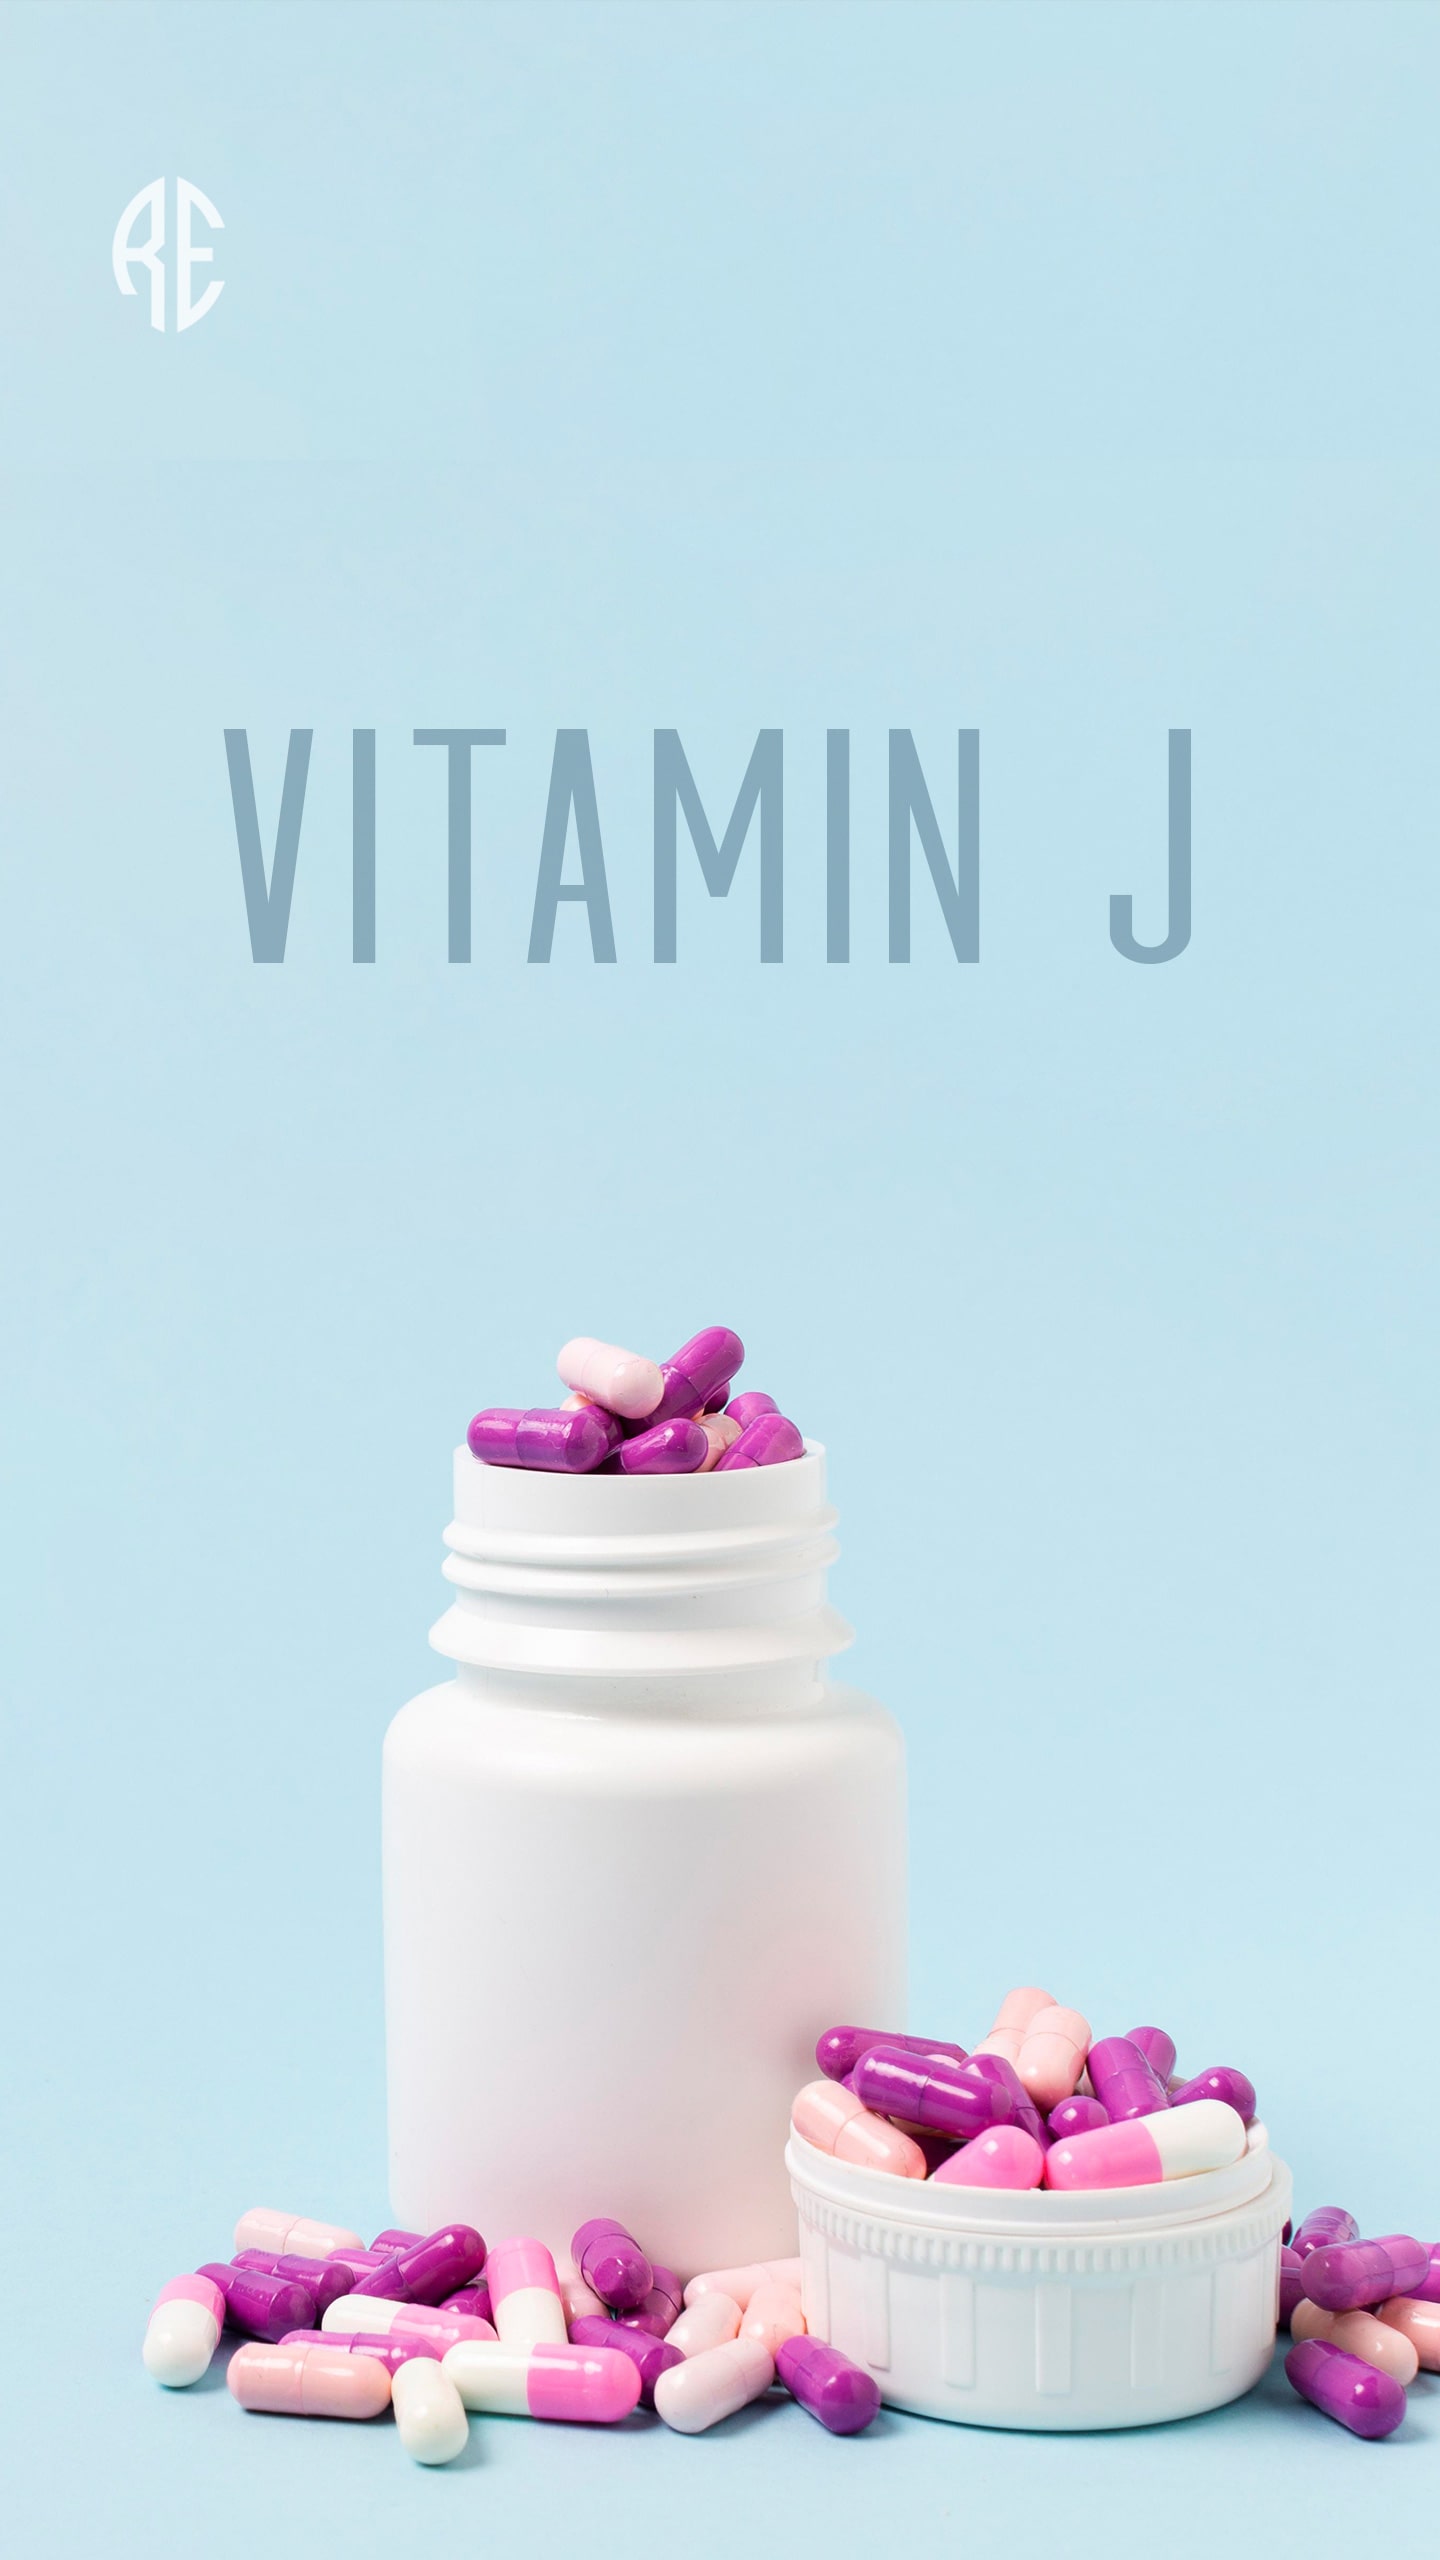 Vitamin J